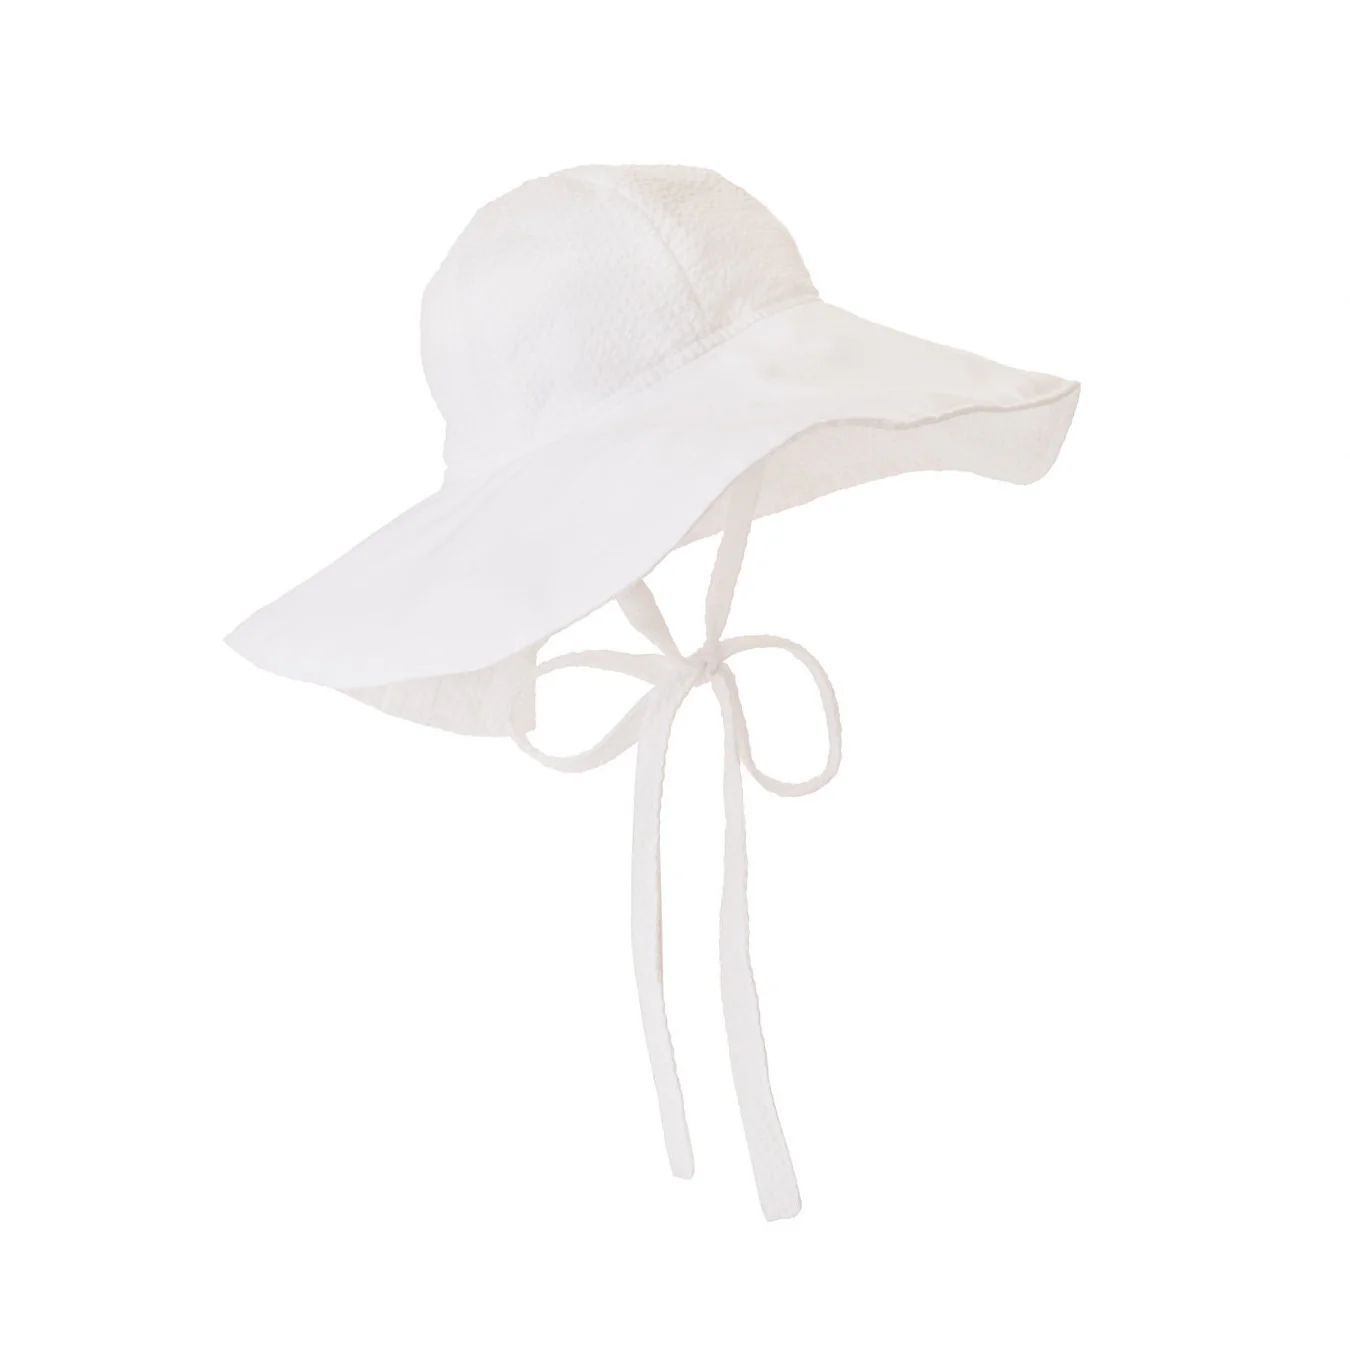 Cissy Sun Hat | The Beaufort Bonnet Company